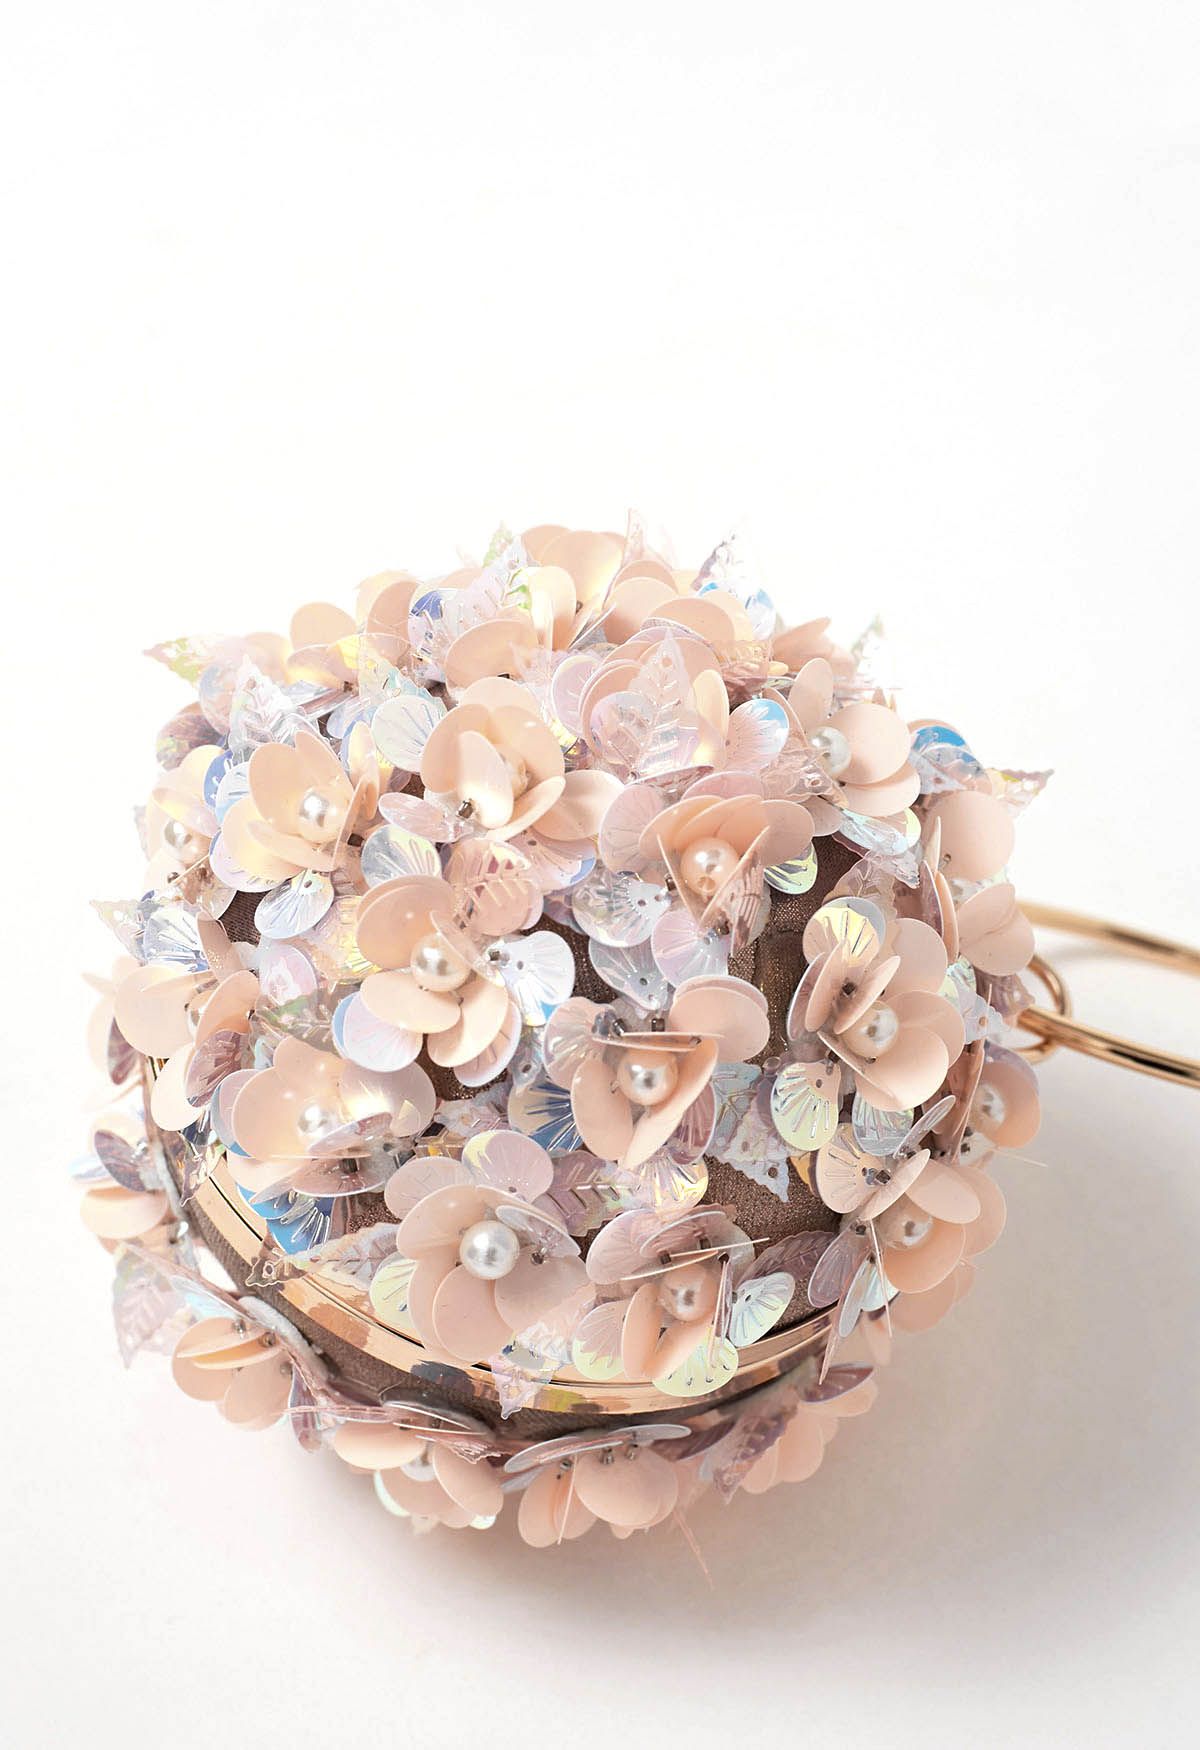 Exquisite Blumen-Kugel-Clutch in Rosa